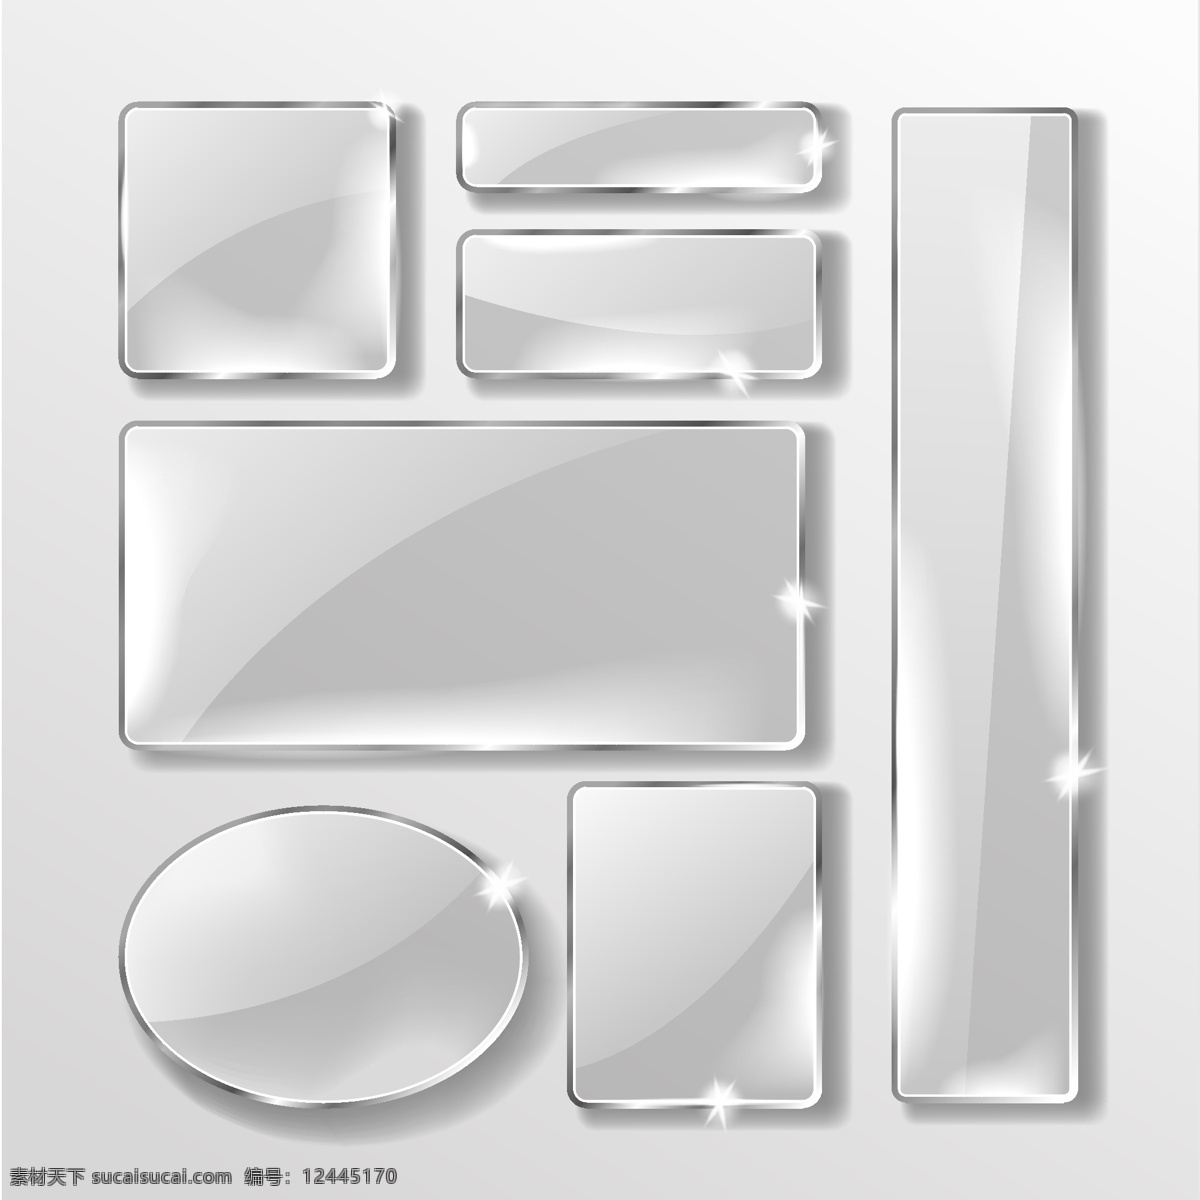 玻璃块 透明有机板 透明玻璃 公司招牌 有机挂画 透明板 钢化玻璃 玻璃效果 展板模板 免扣素材 矢量素材 原创素材